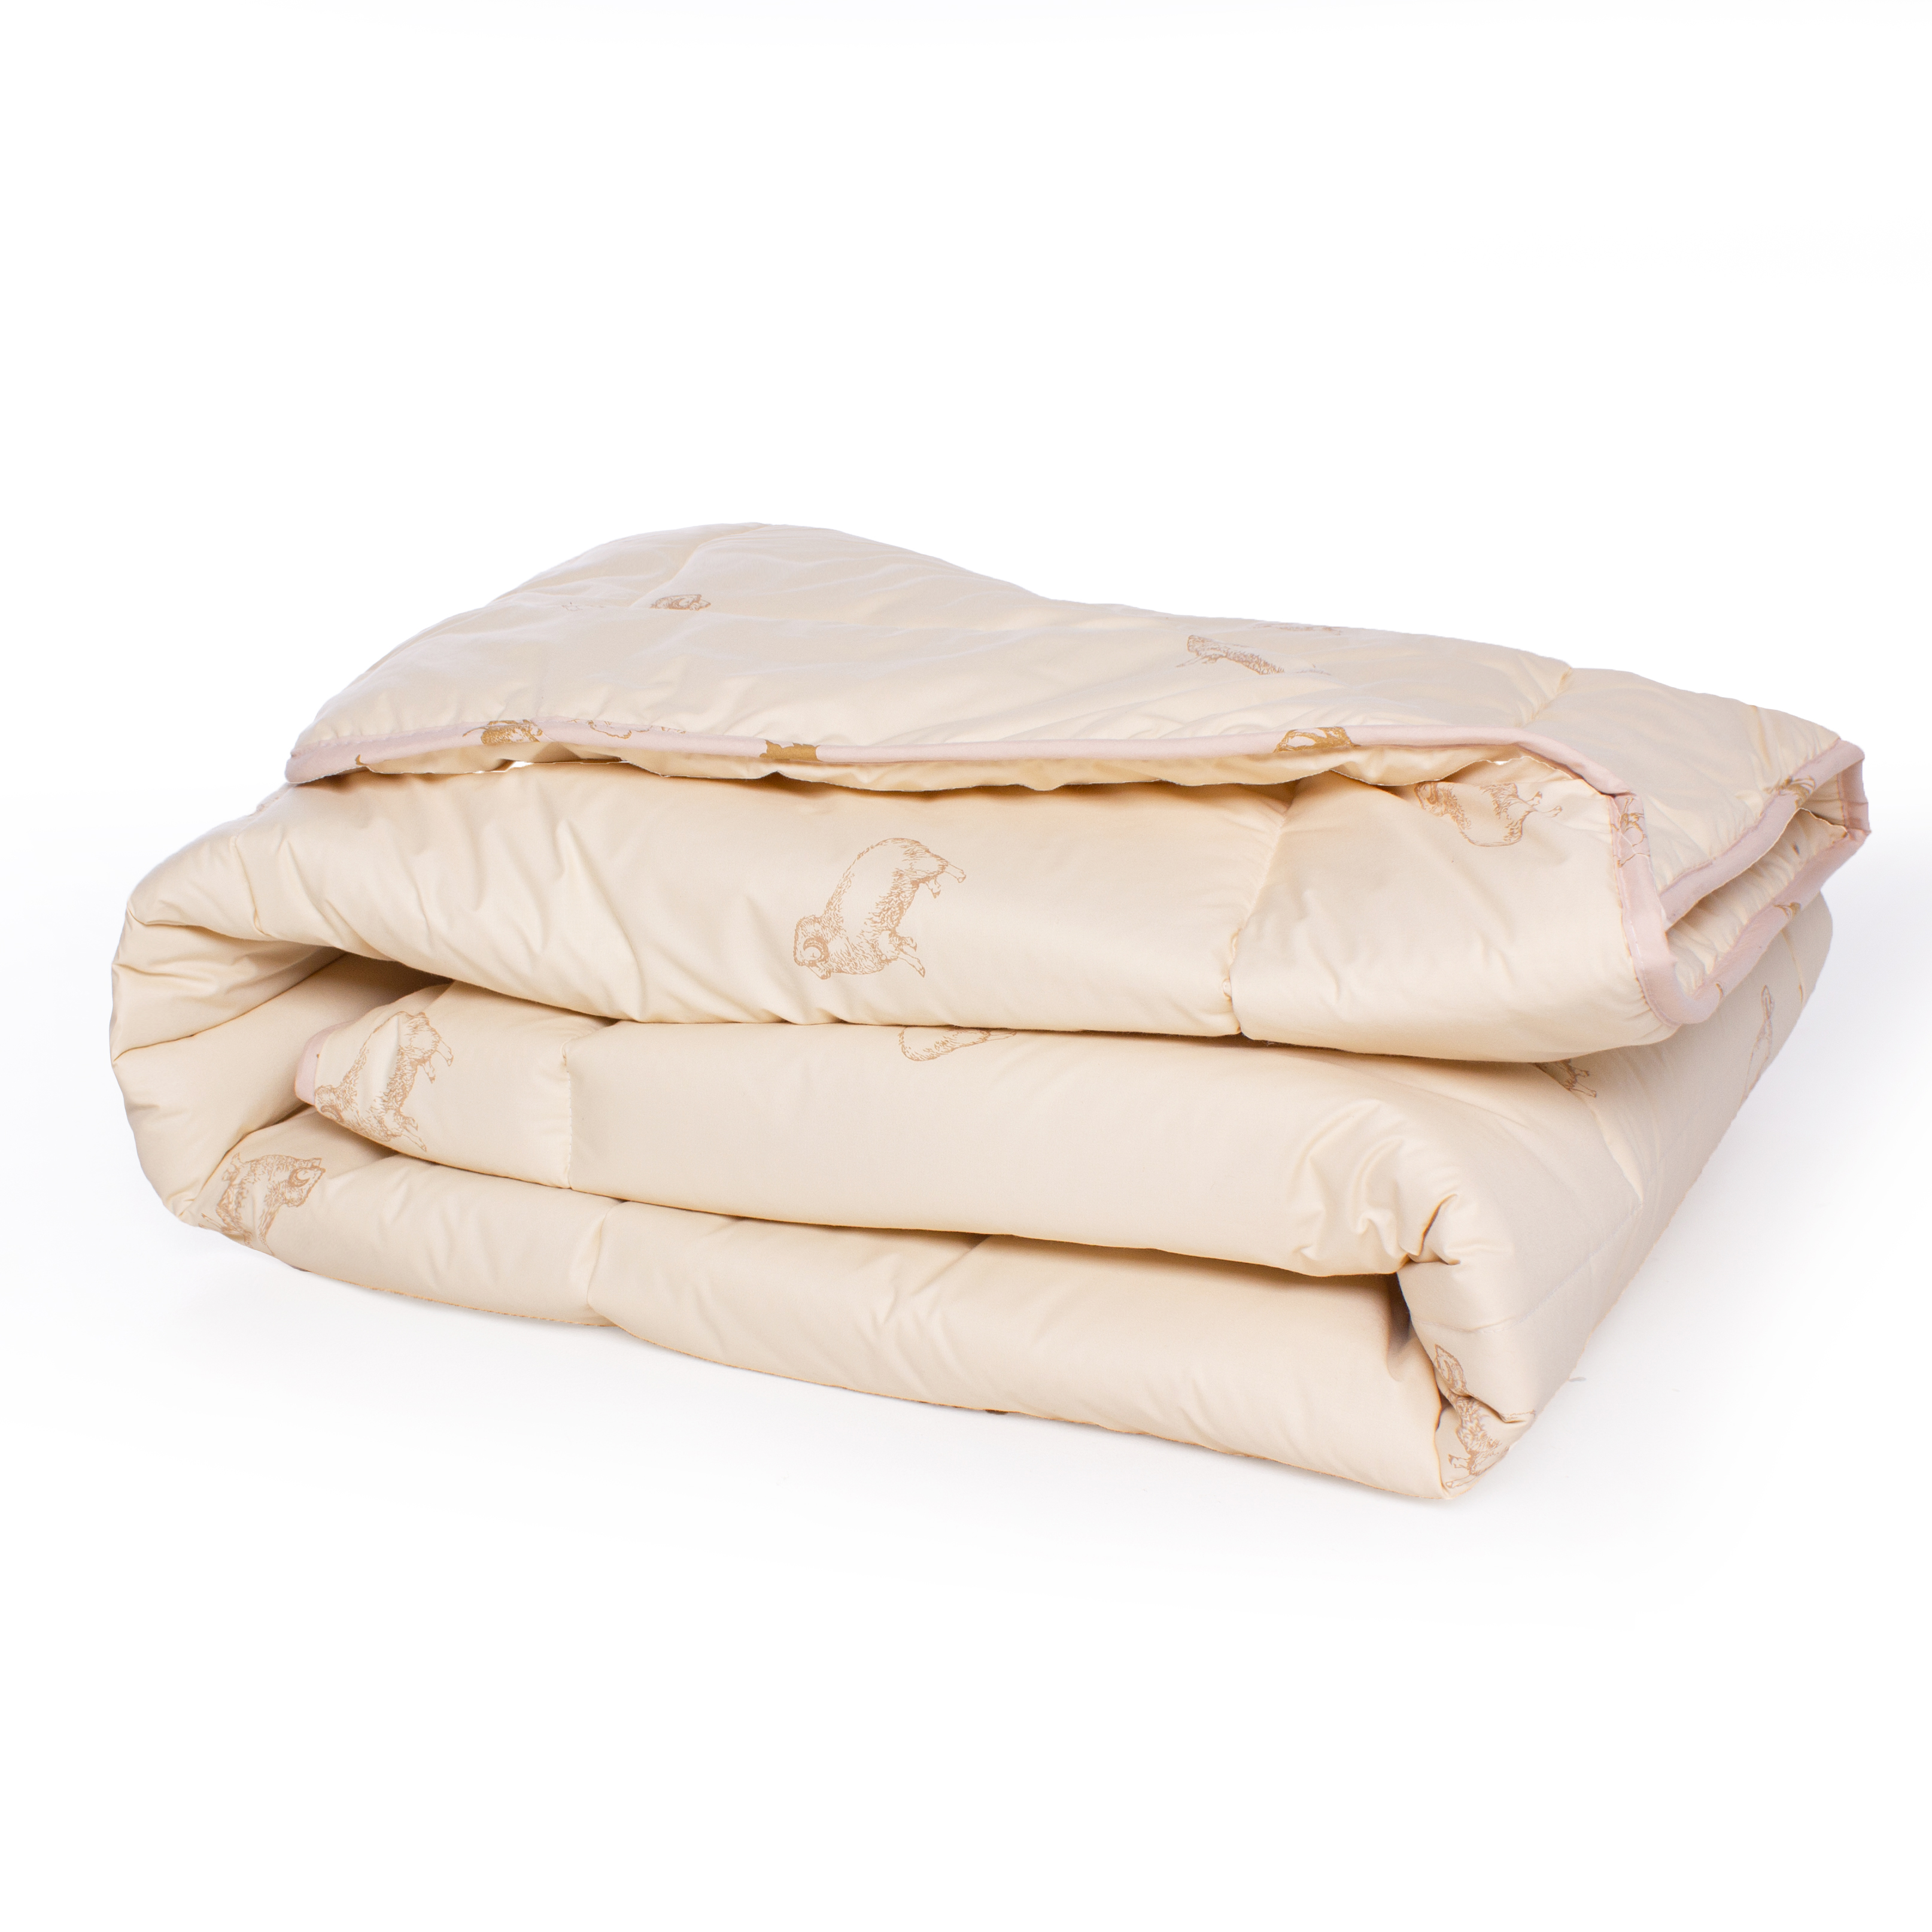 Одеяло шерстяное MirSon Gold Camel №024, зимнее, 155x215 см, кремовое - фото 2